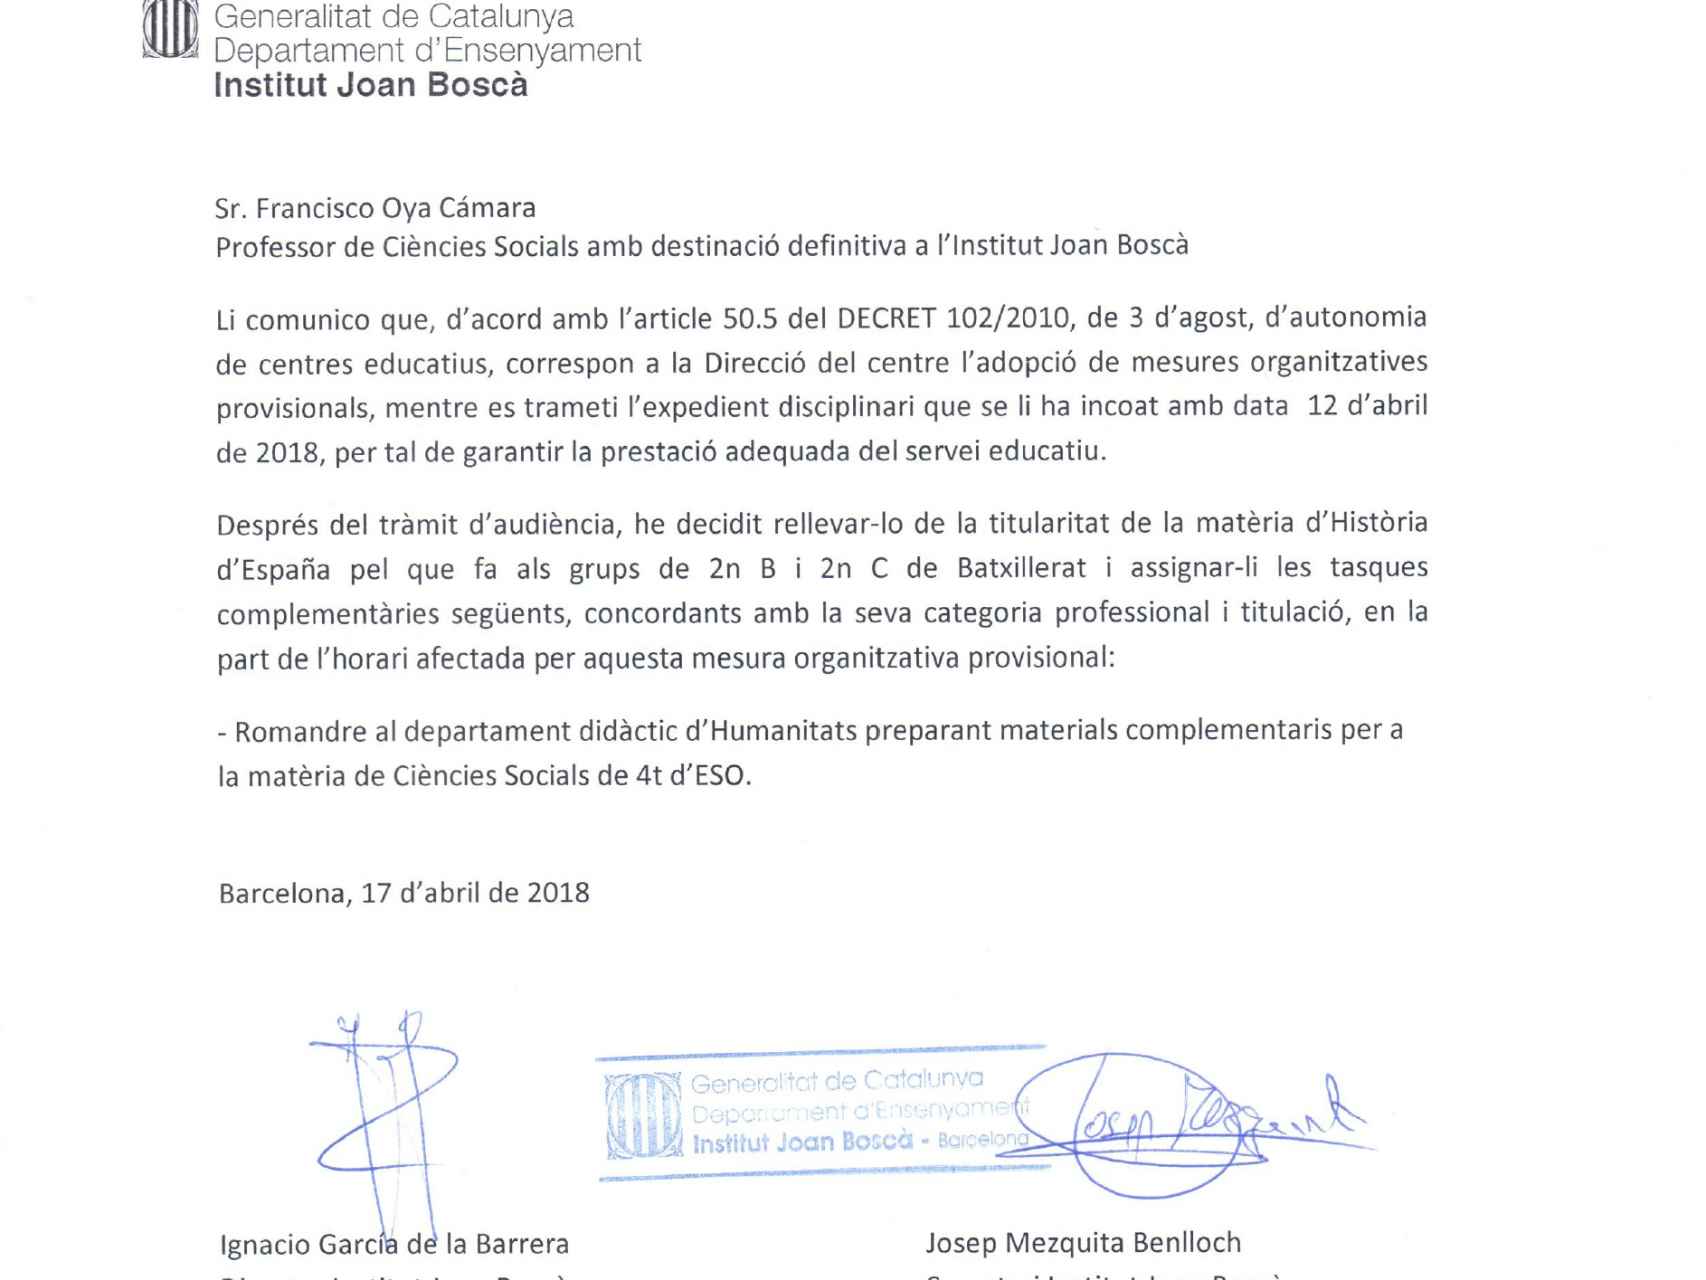 Con esta carta el director del instituto Joan Boscà le comunicó a Oya su relevo.